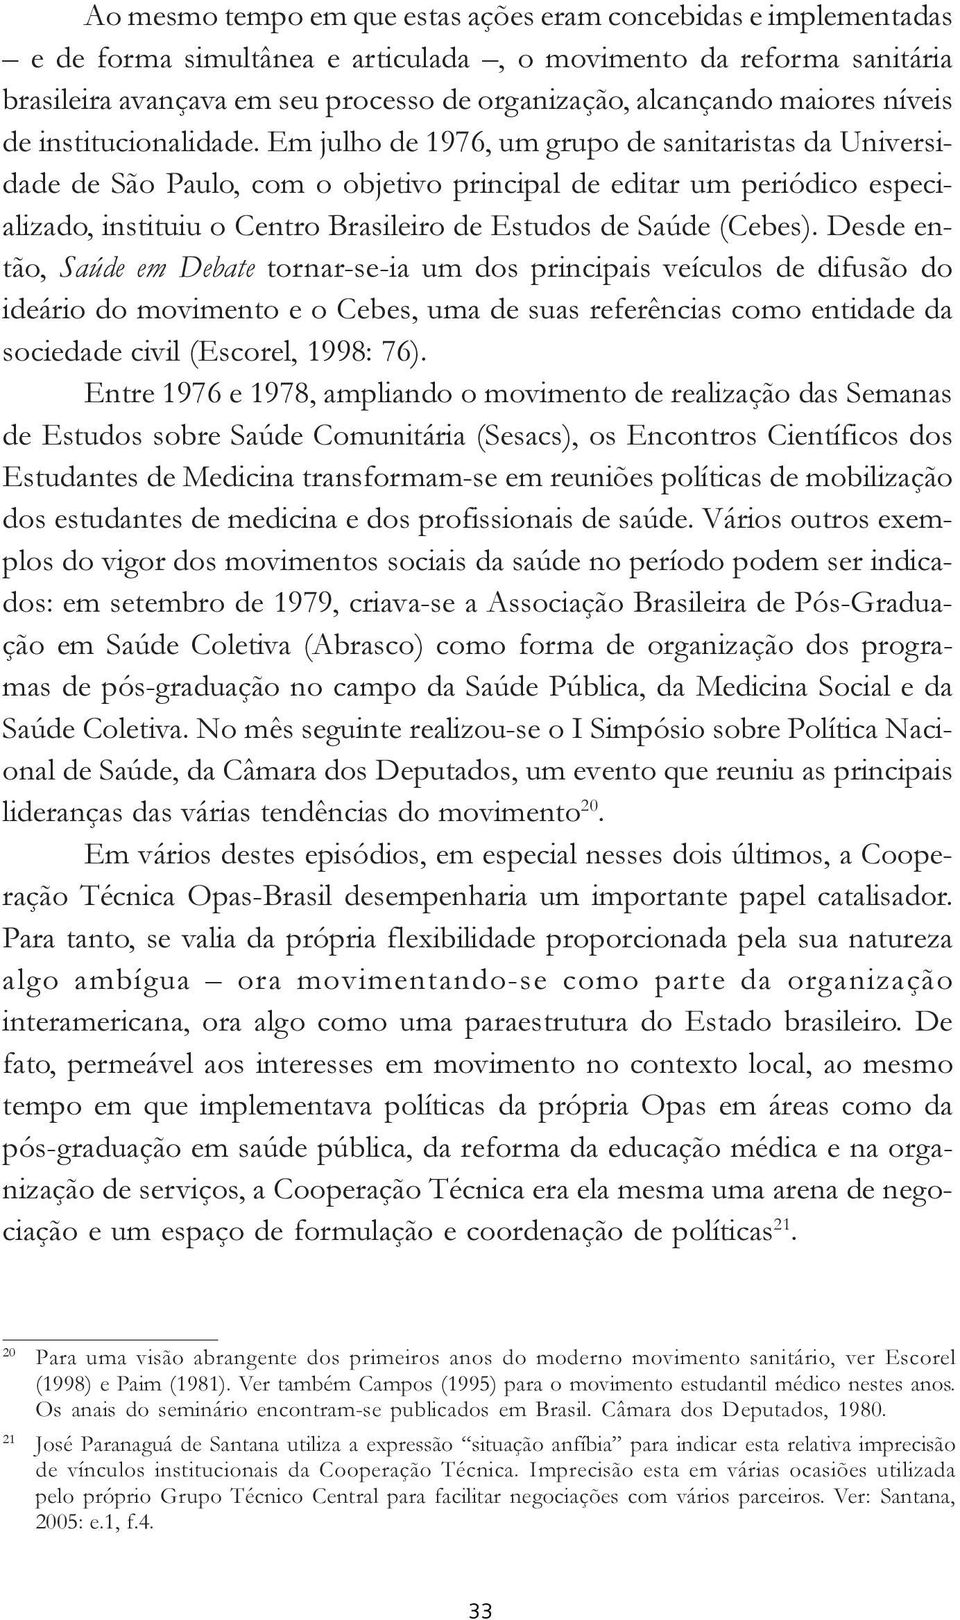 Em julho de 1976, um grupo de sanitaristas da Universidade de São Paulo, com o objetivo principal de editar um periódico especializado, instituiu o Centro Brasileiro de Estudos de Saúde (Cebes).